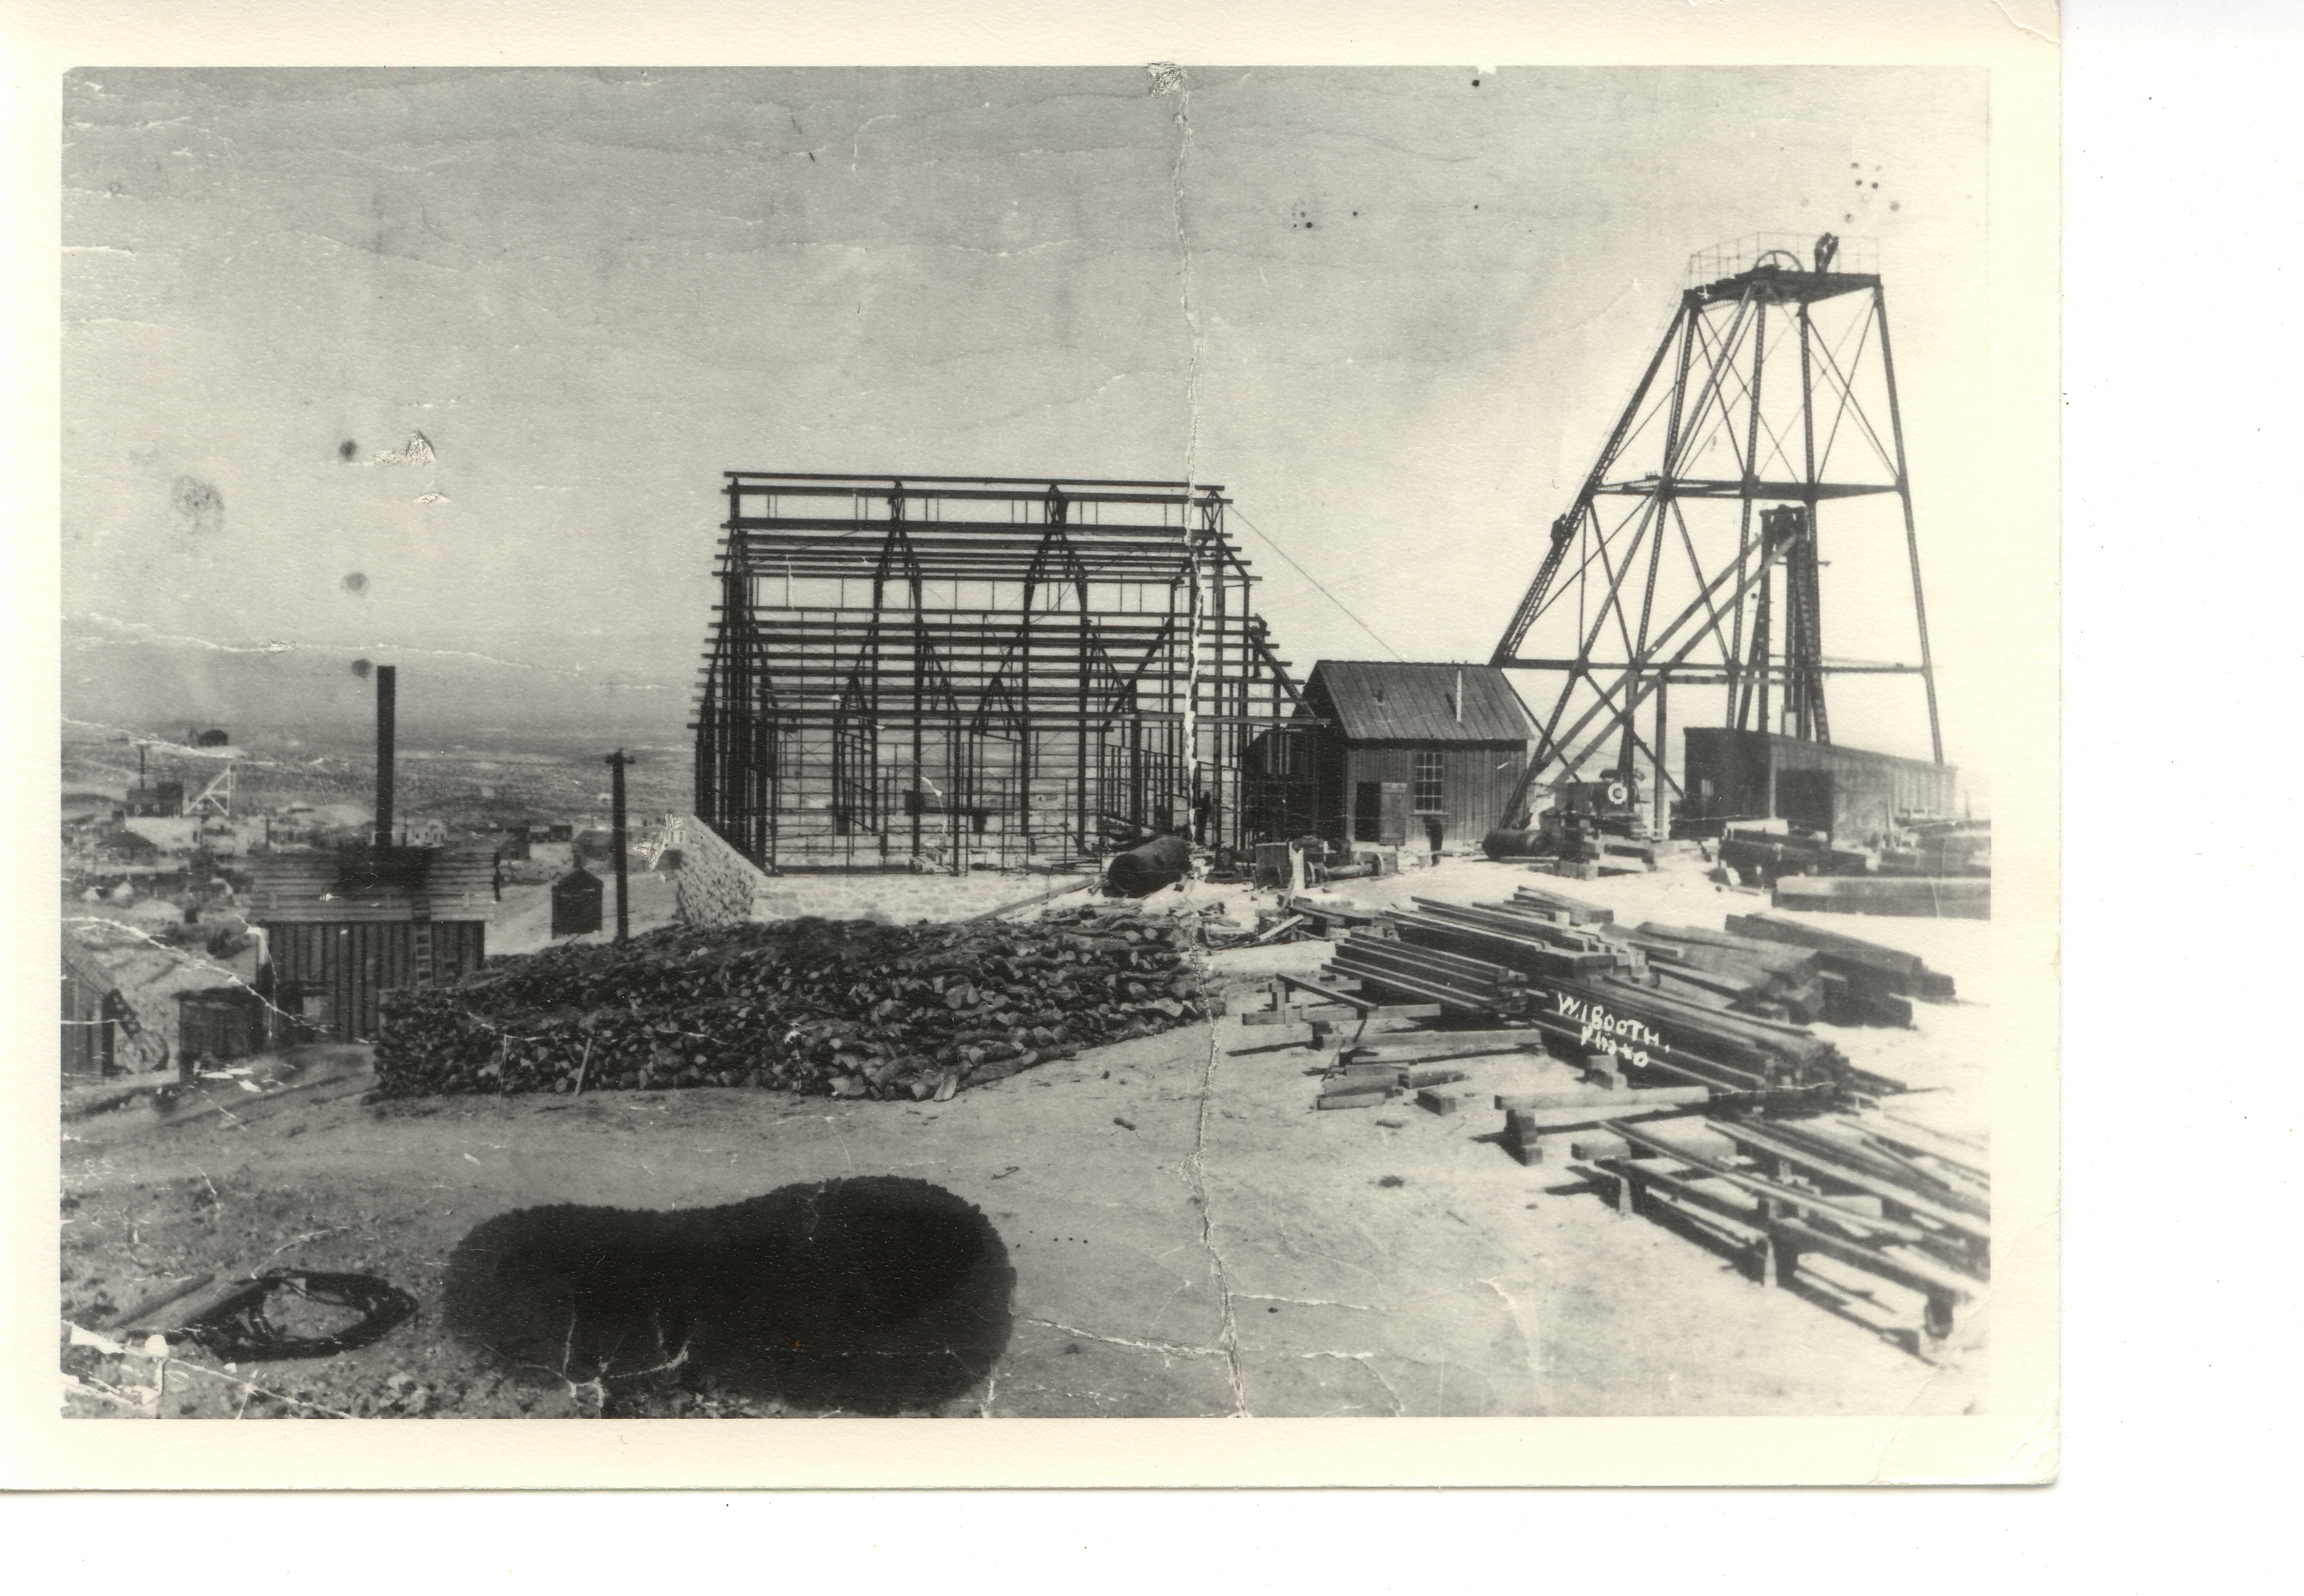 mizpah building construction 1902 300 dpi